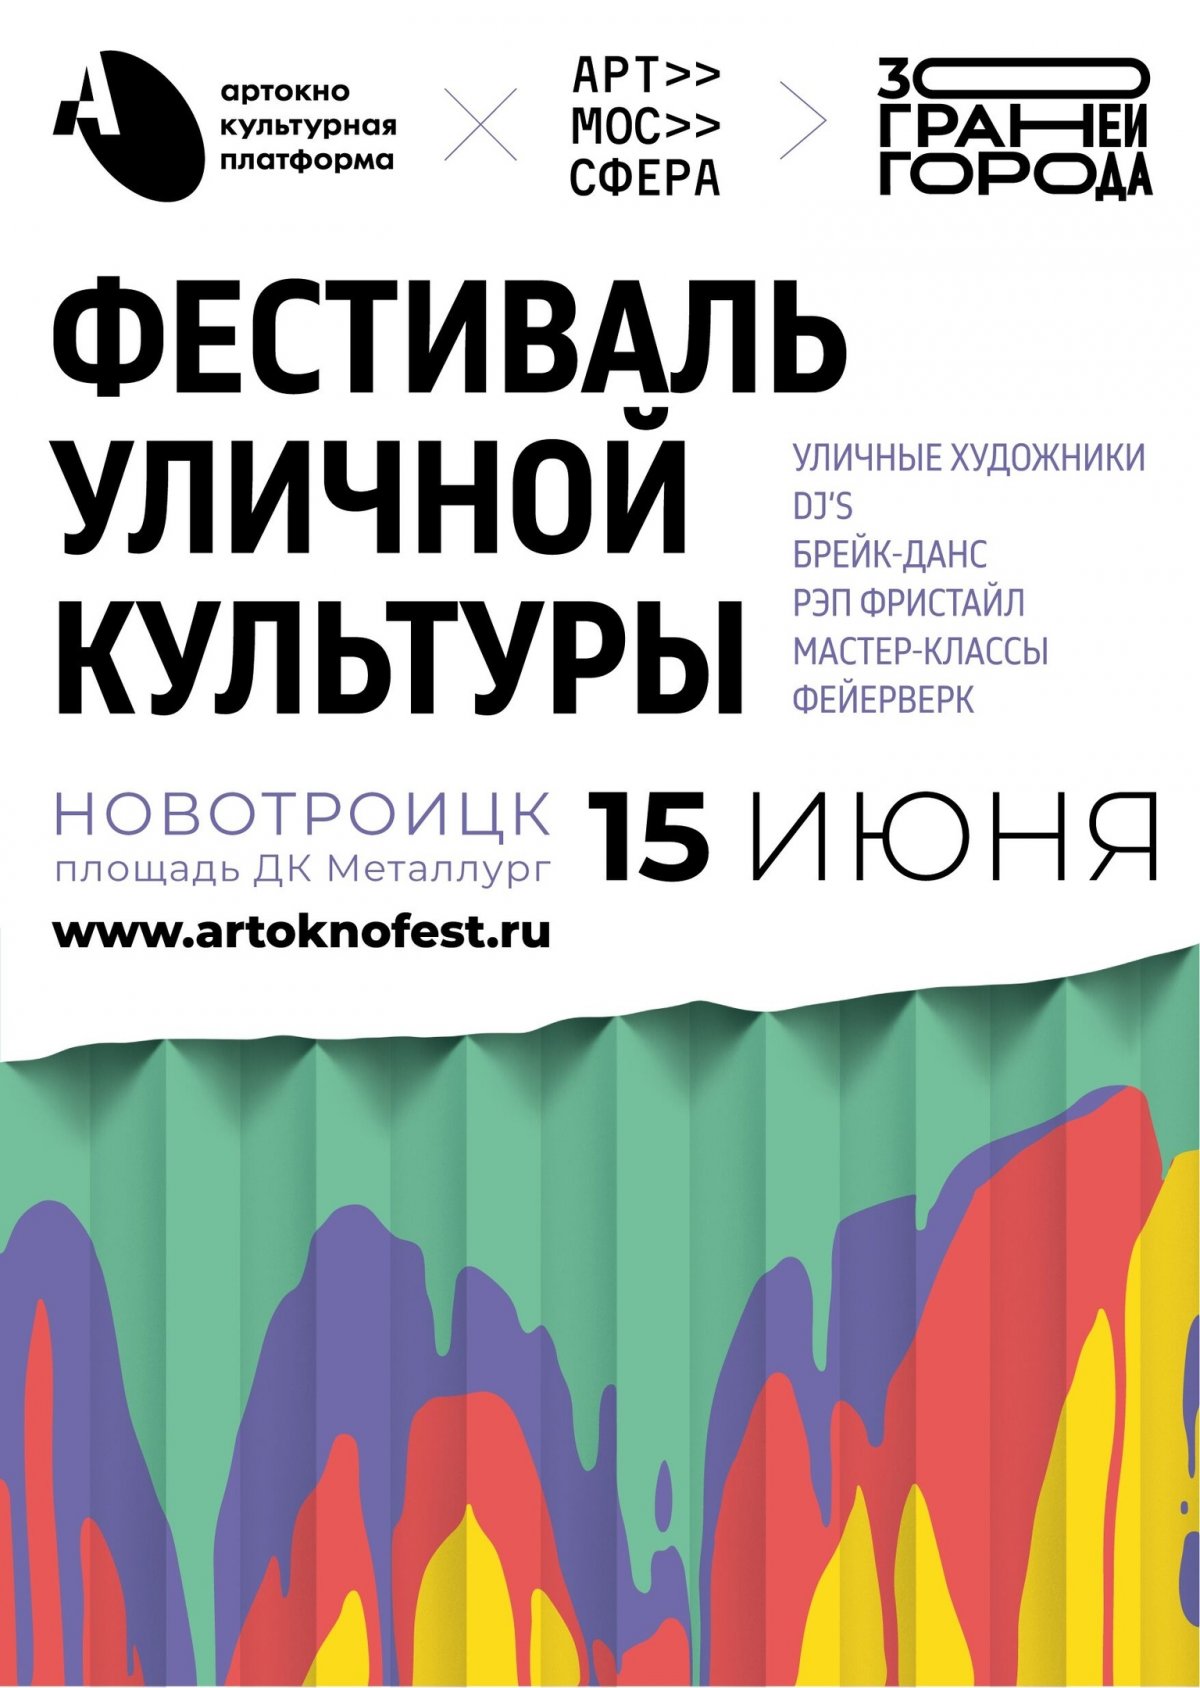 Фестиваль уличной культуры «30 граней города» - Афиша - Культурная платформа АРТ-ОКНО